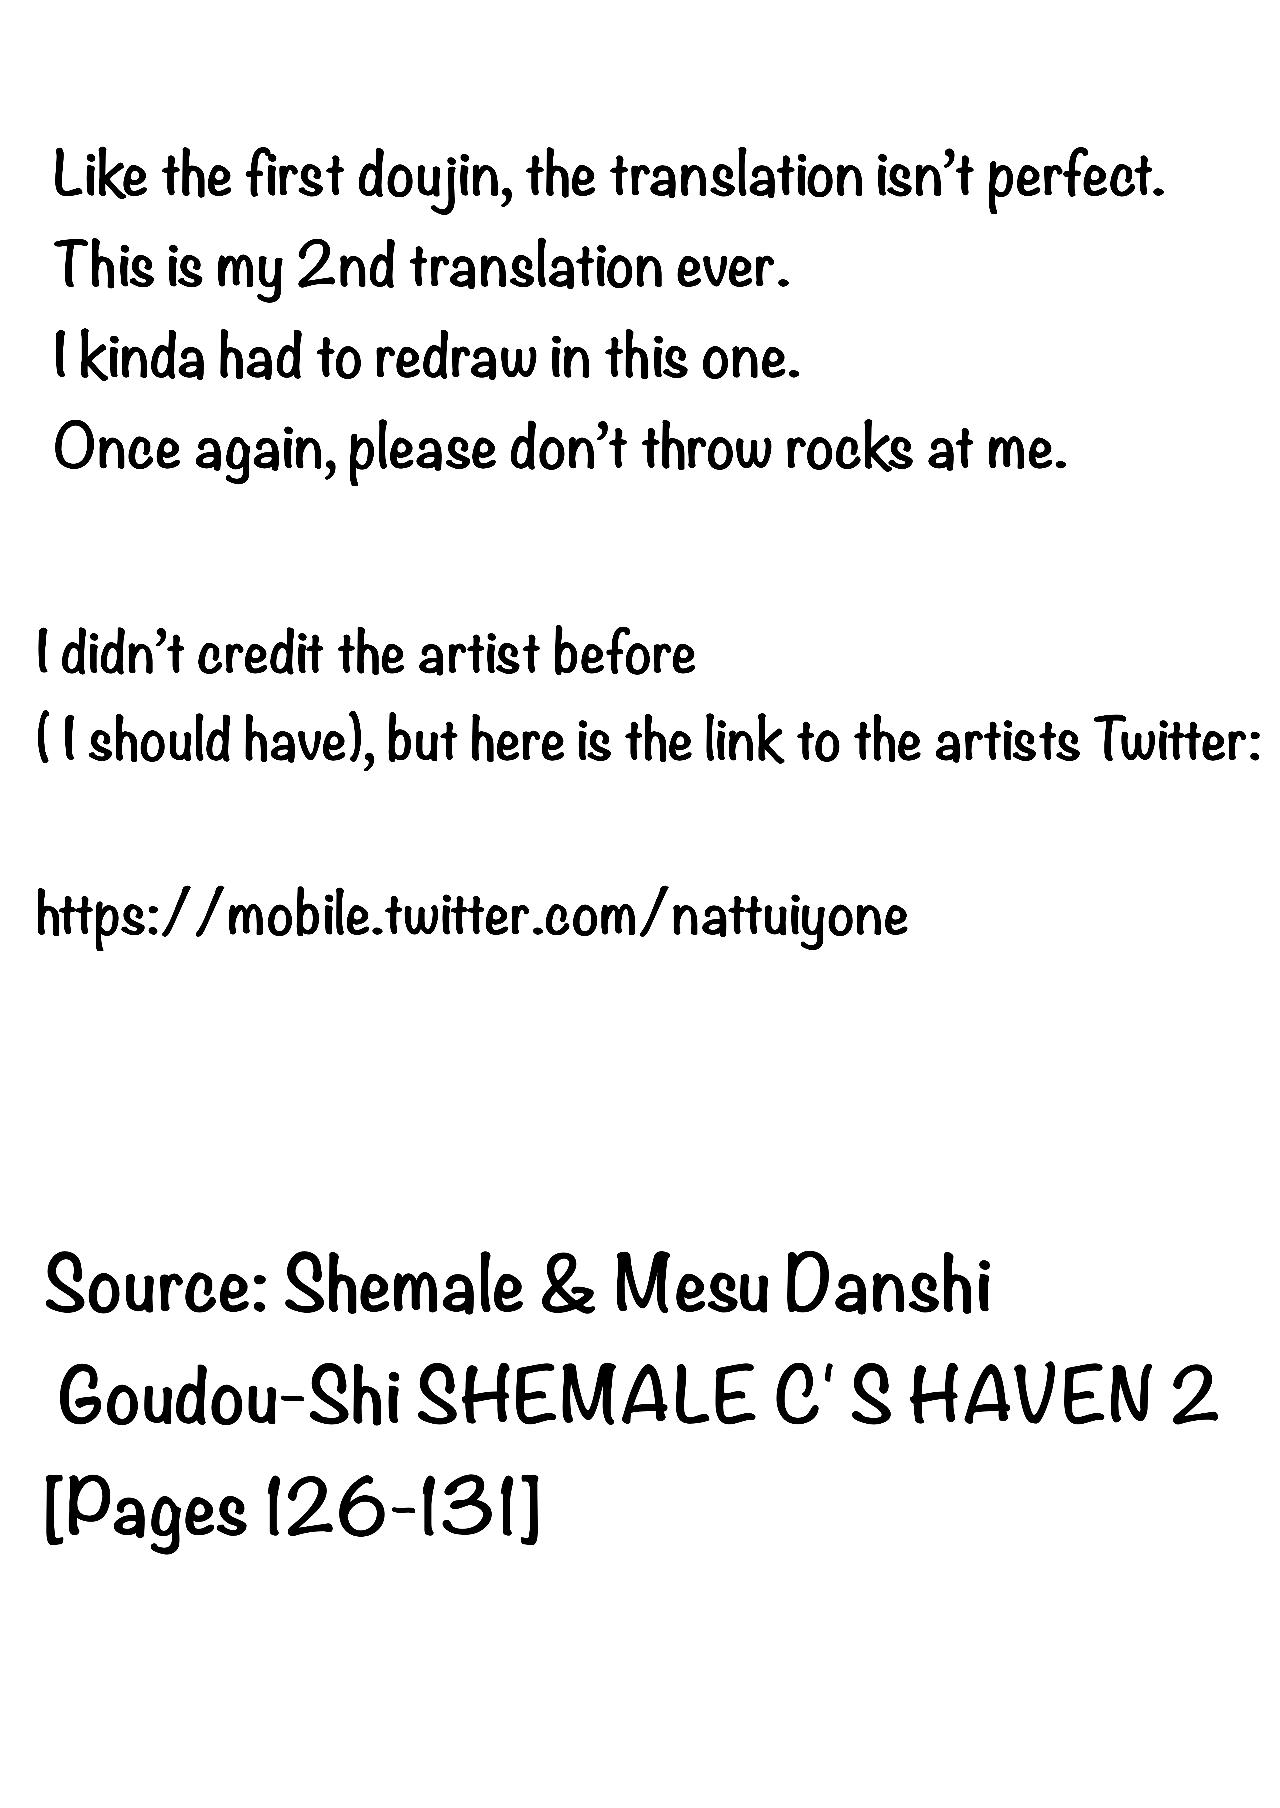 Shemale & Mesu Danshi Goudou-Shi SHEMALE C' S HAVEN 2 7